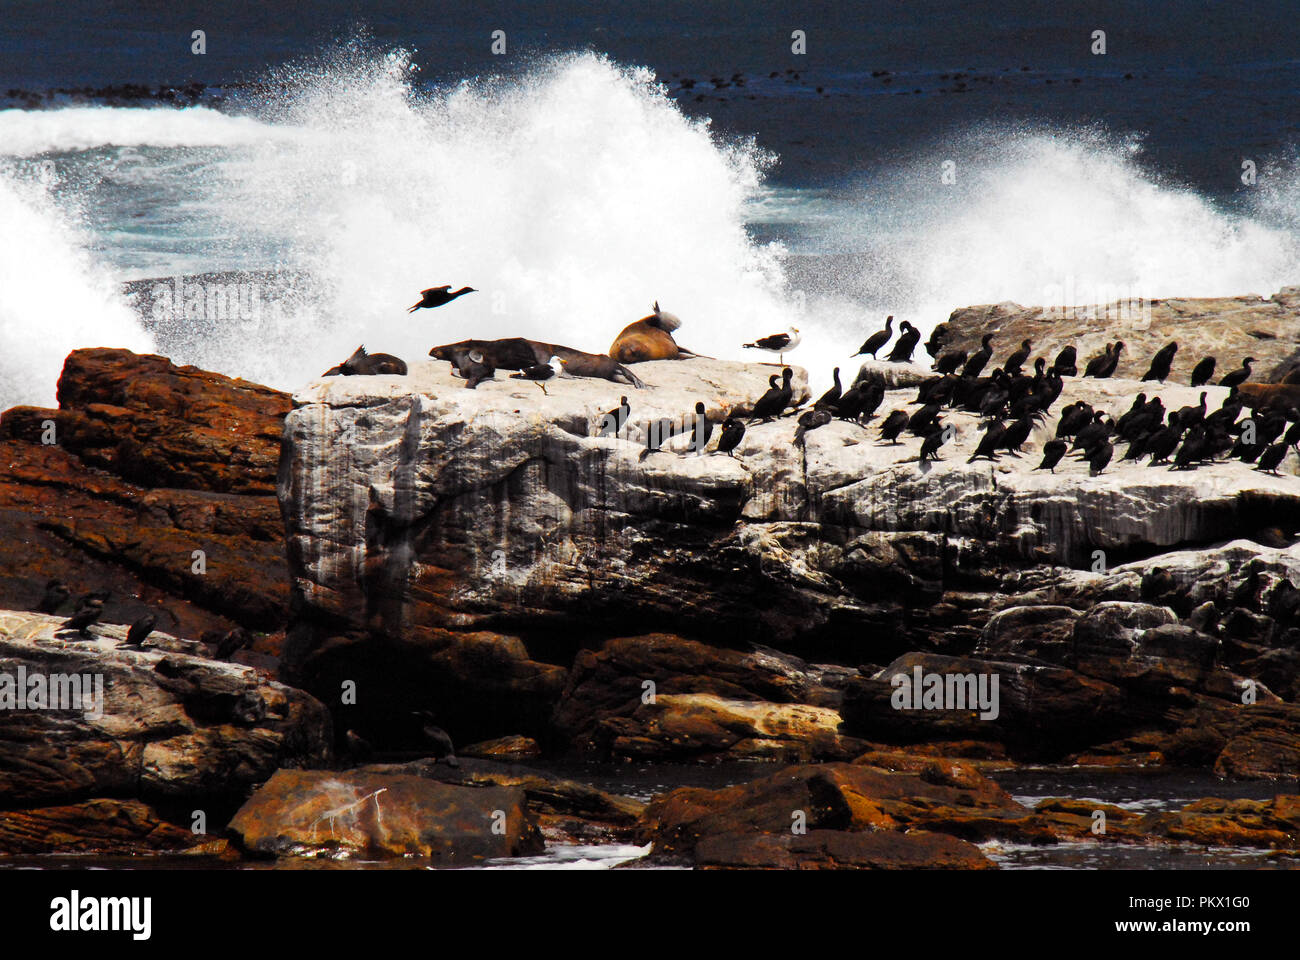 Riesige Wellen, die in der zerklüfteten Küste bedrohen die Sicherheit von Pelzrobben und Kormorane am Kap der Guten Hoffnung in Südafrika. Stockfoto